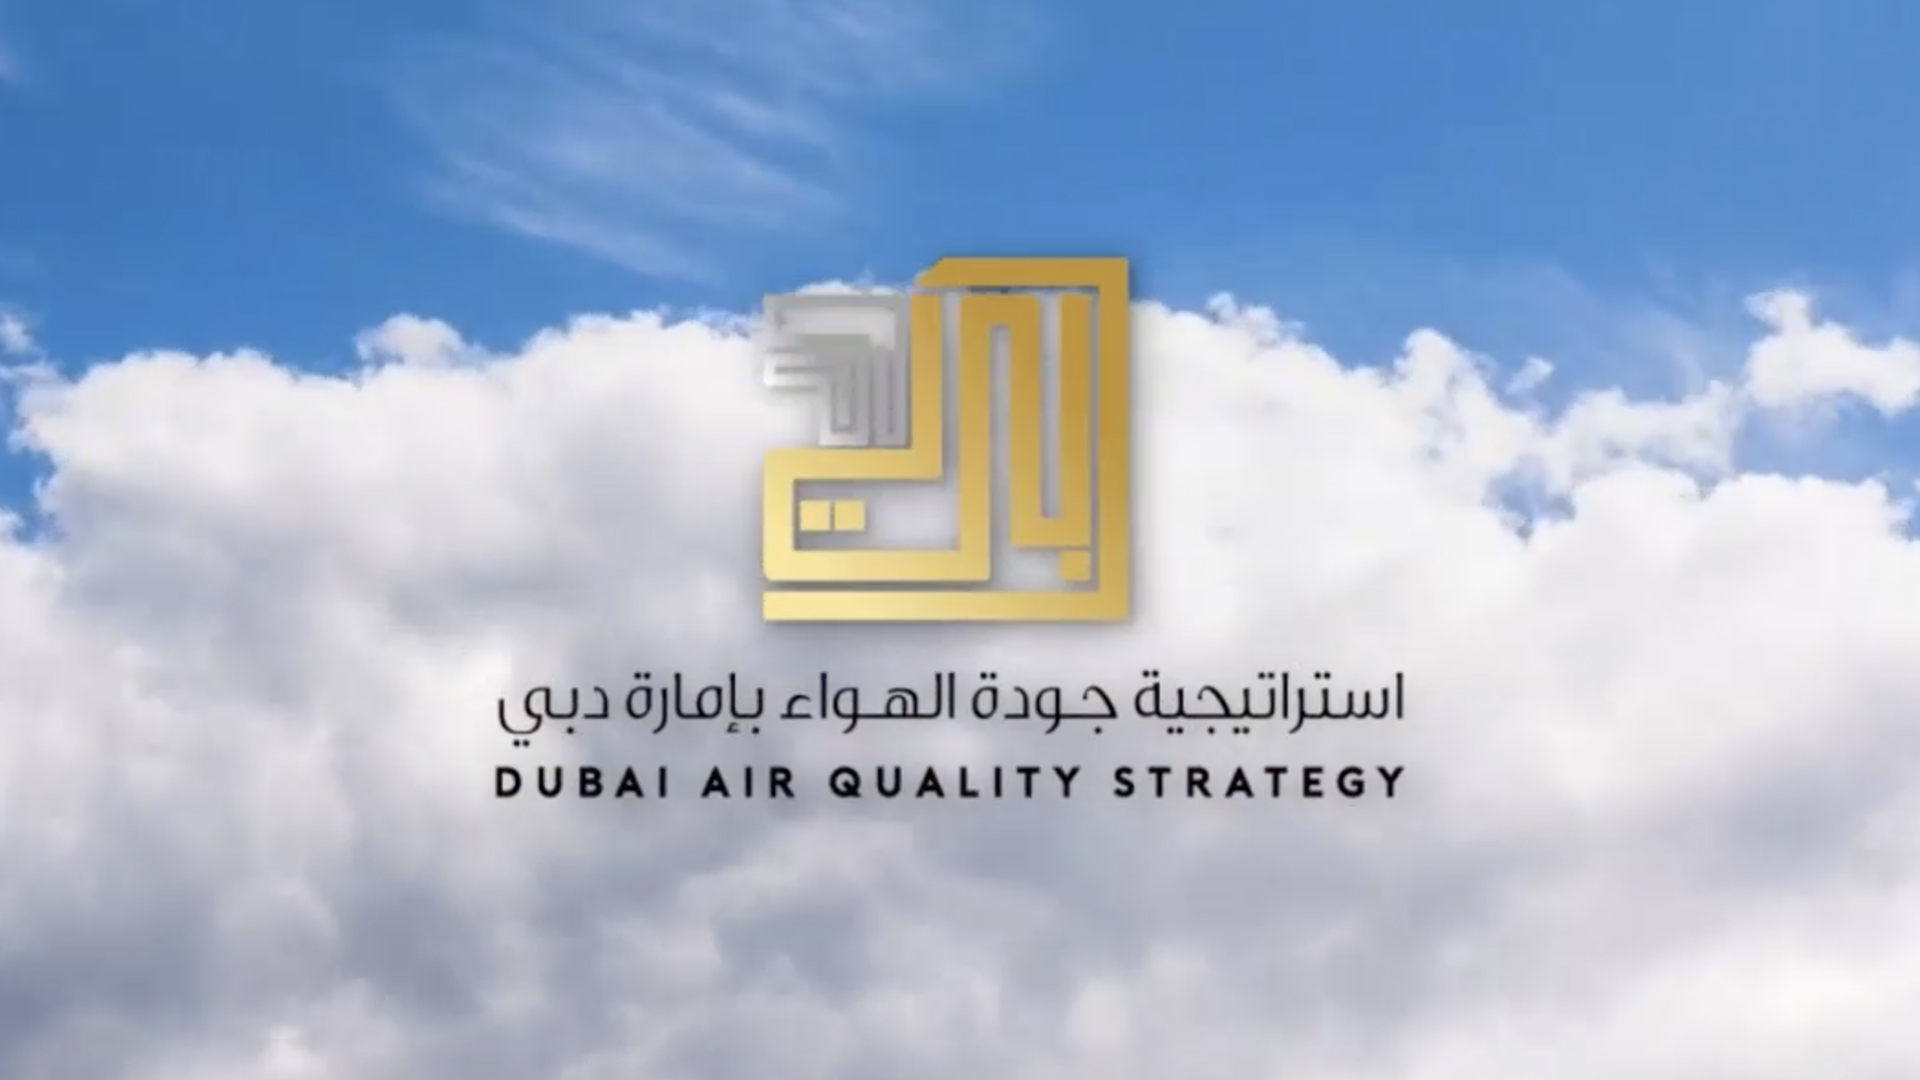 Dubai Air Quality Strategy